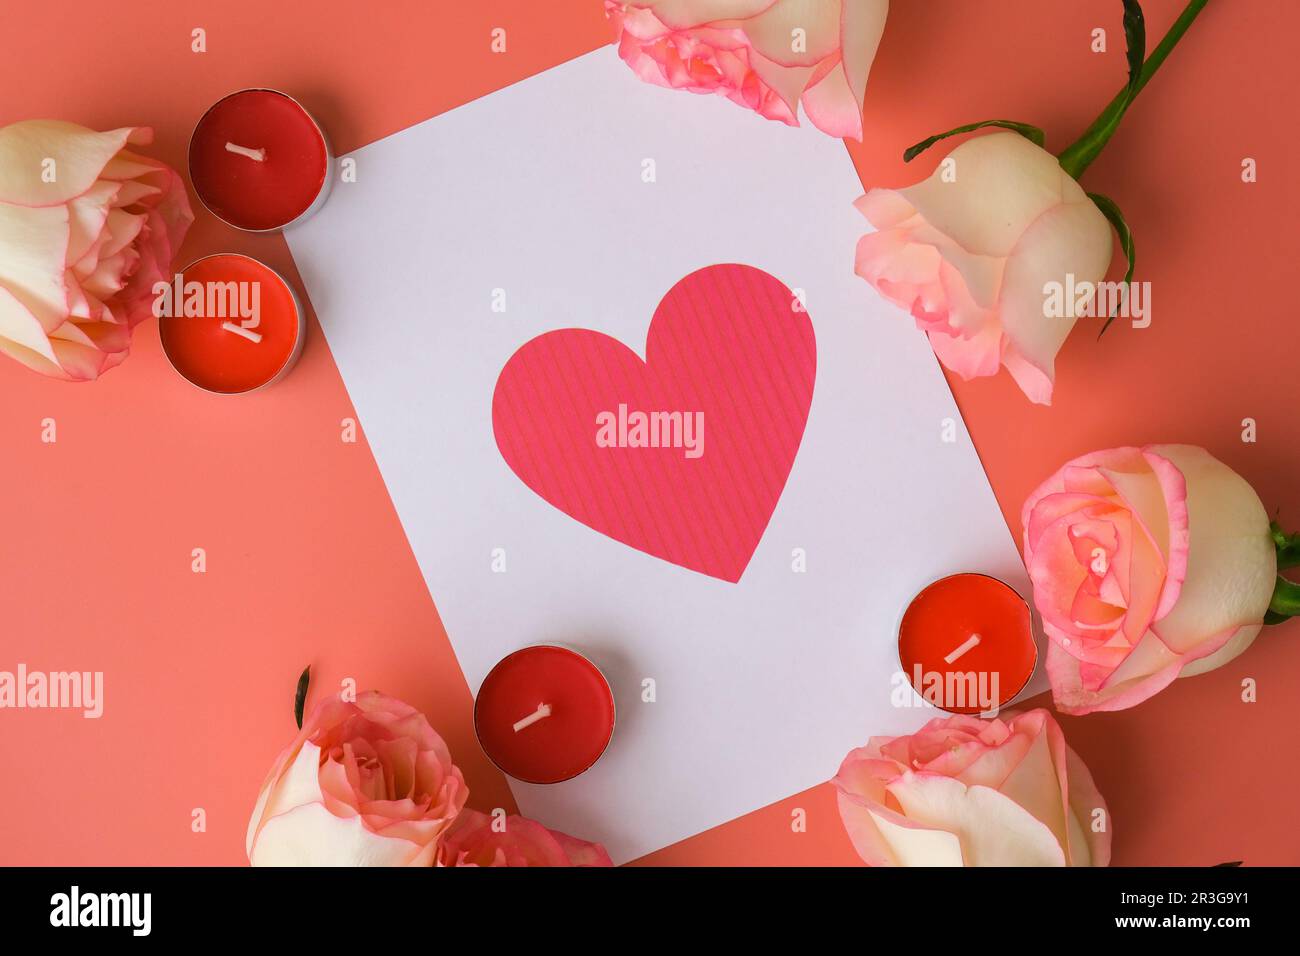 Carte de vœux en forme de coeur sur note papier. Roses roses délicates sur fond rose. Composition tendance minimale. Rose pastel romantique Banque D'Images